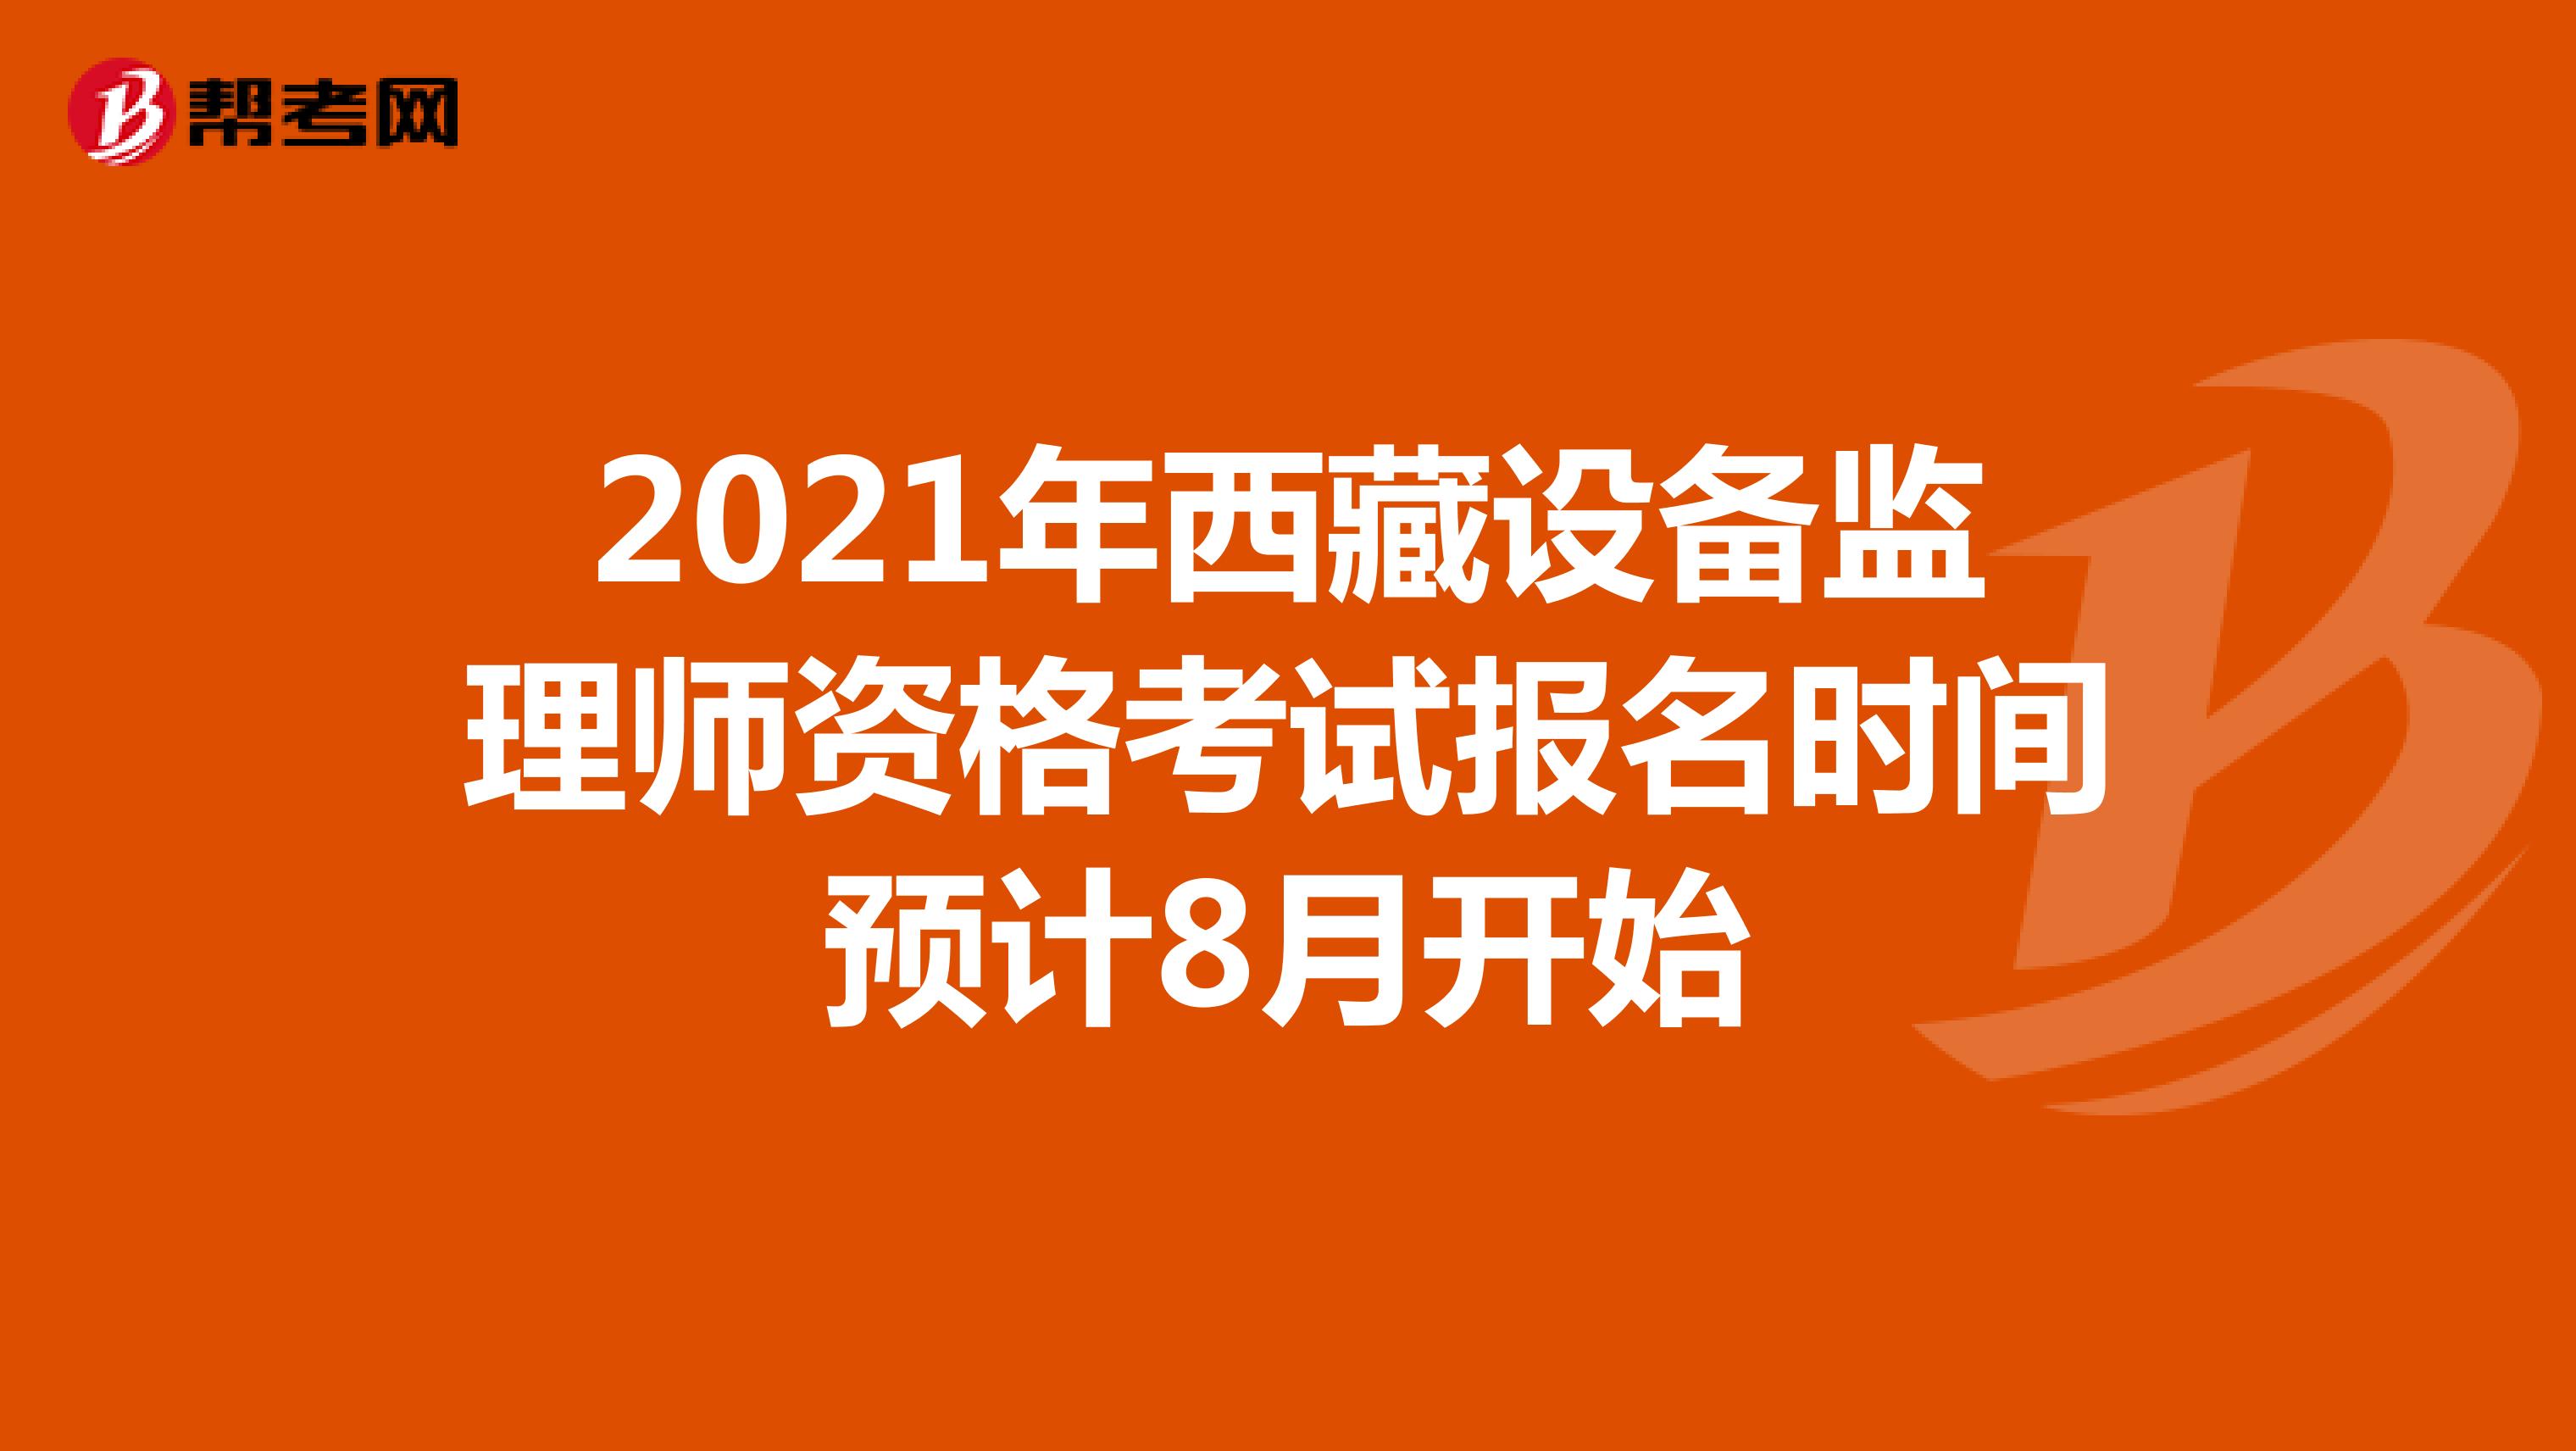 2021年西藏设备监理师资格考试报名时间预计8月开始